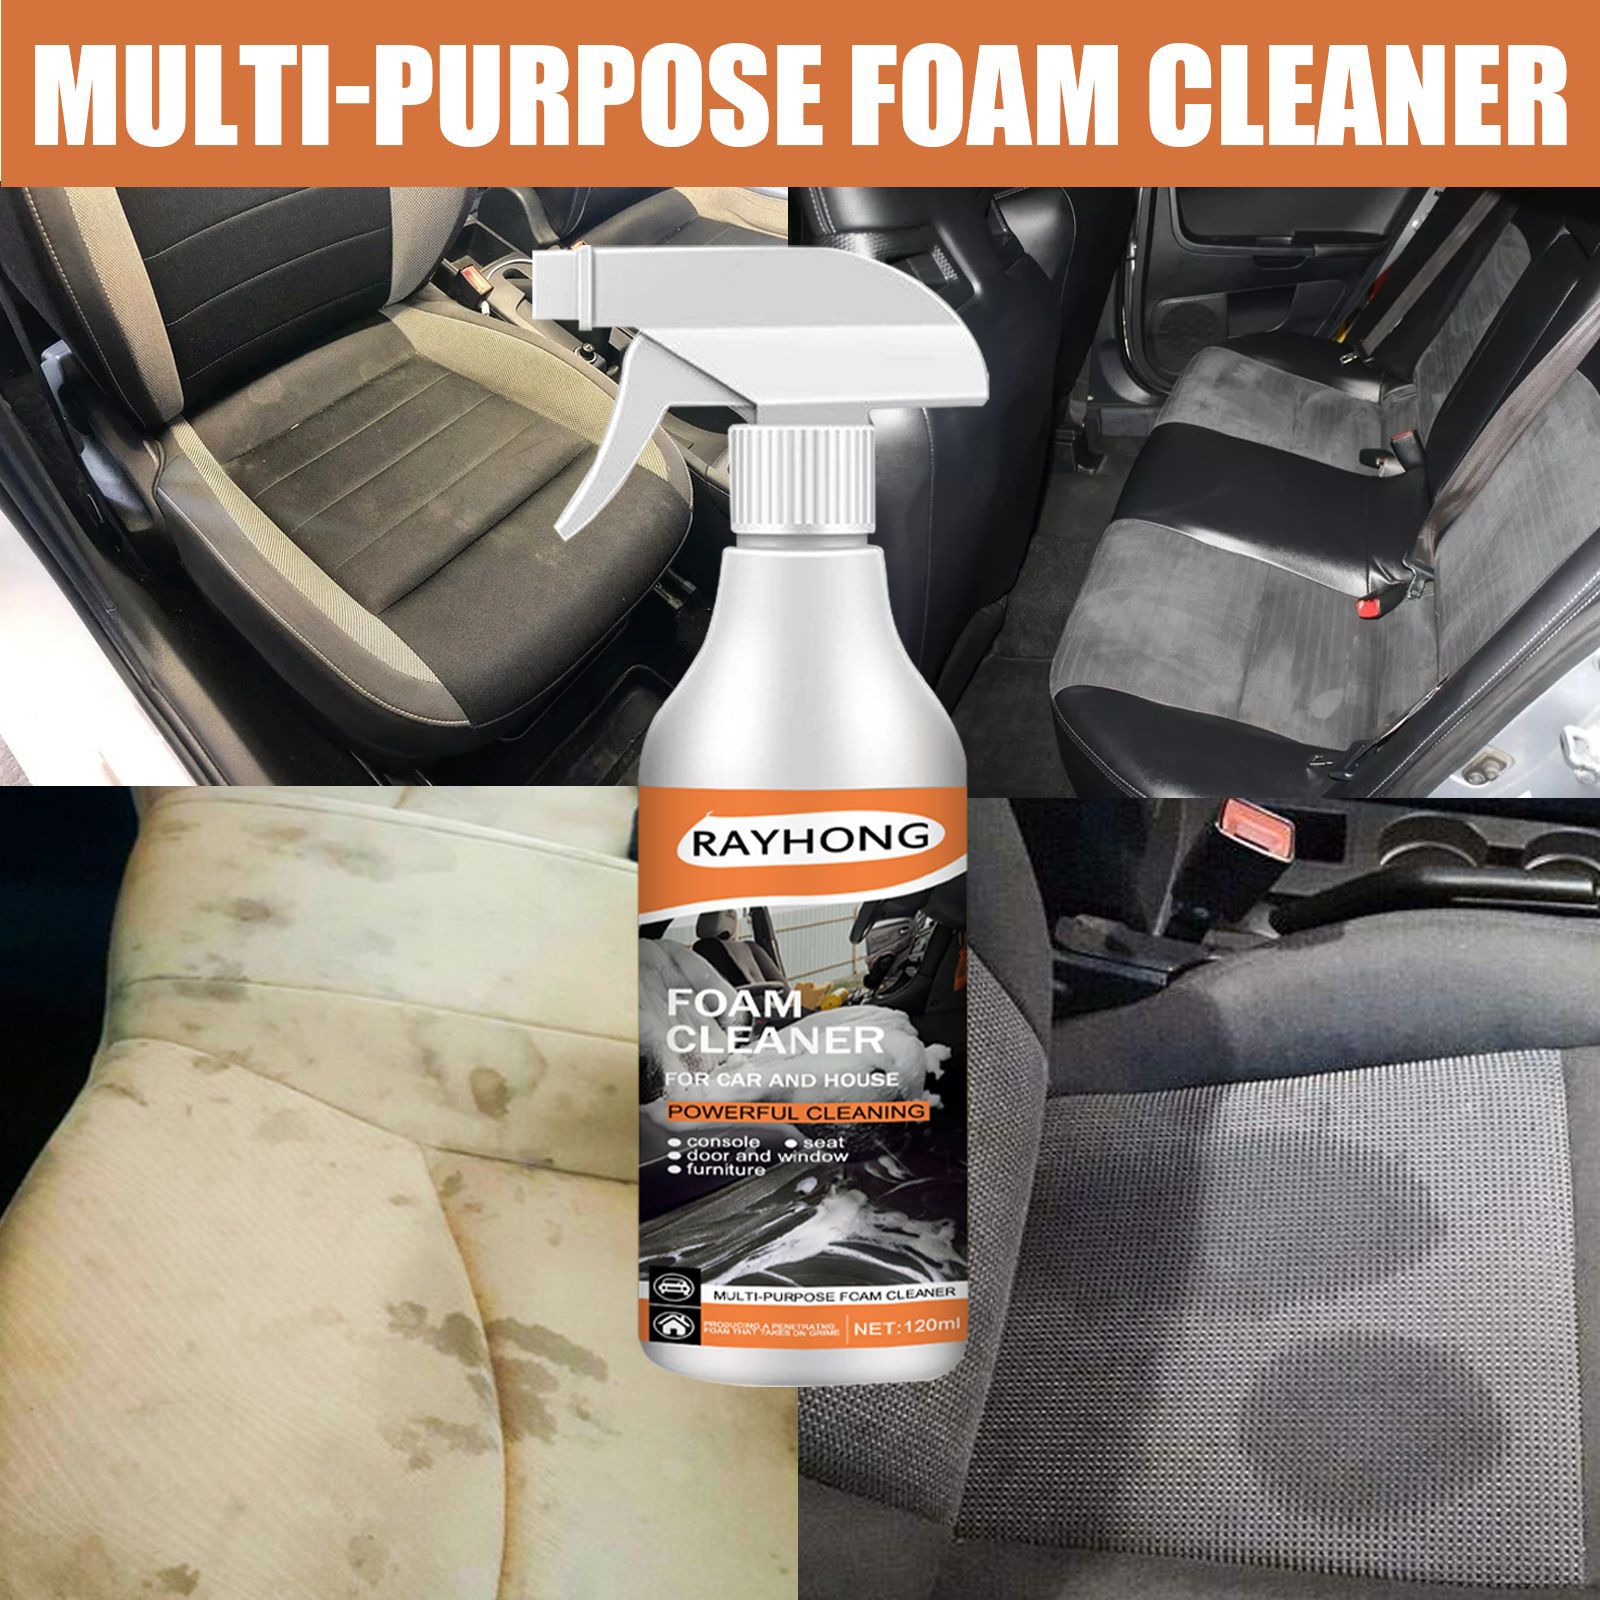 Multi-Purpose Auto Cleaner